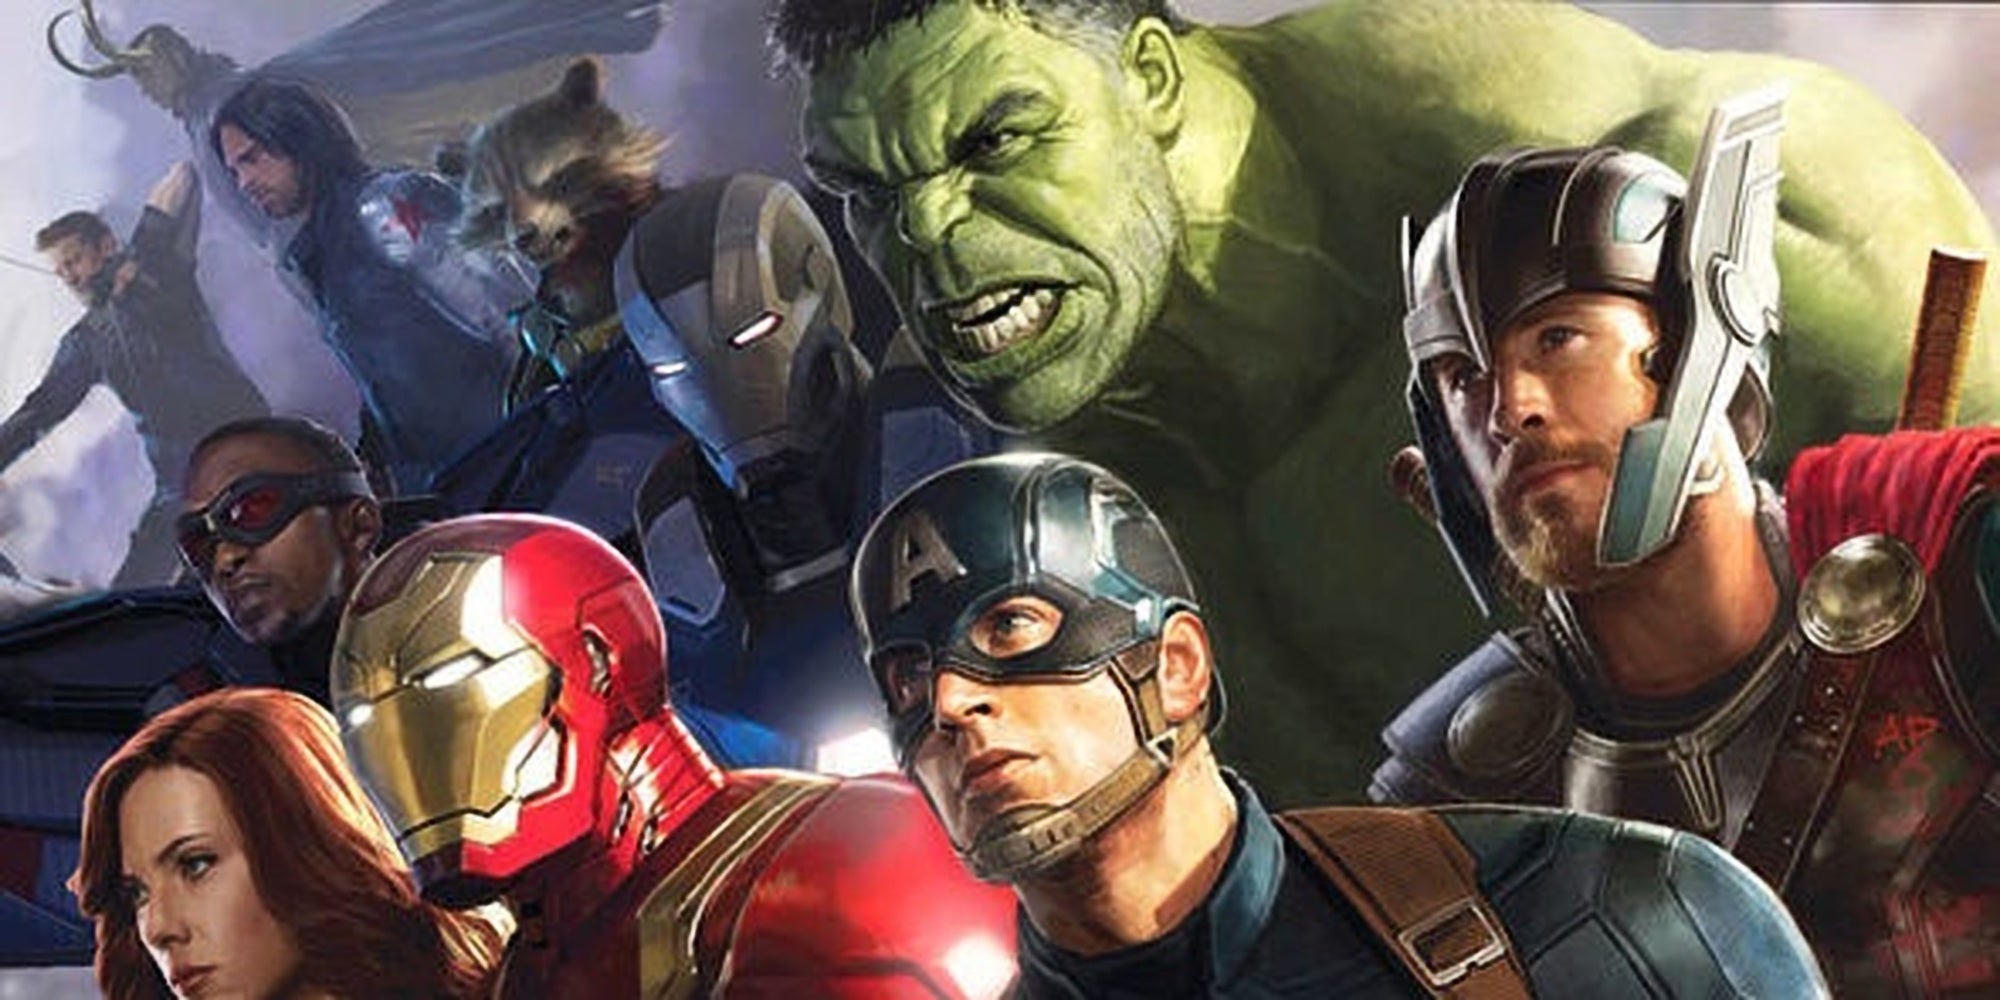 Batman Vs Deadpool Sexx - Avengers 4 directors discuss chances of Deadpool and X-Men ...